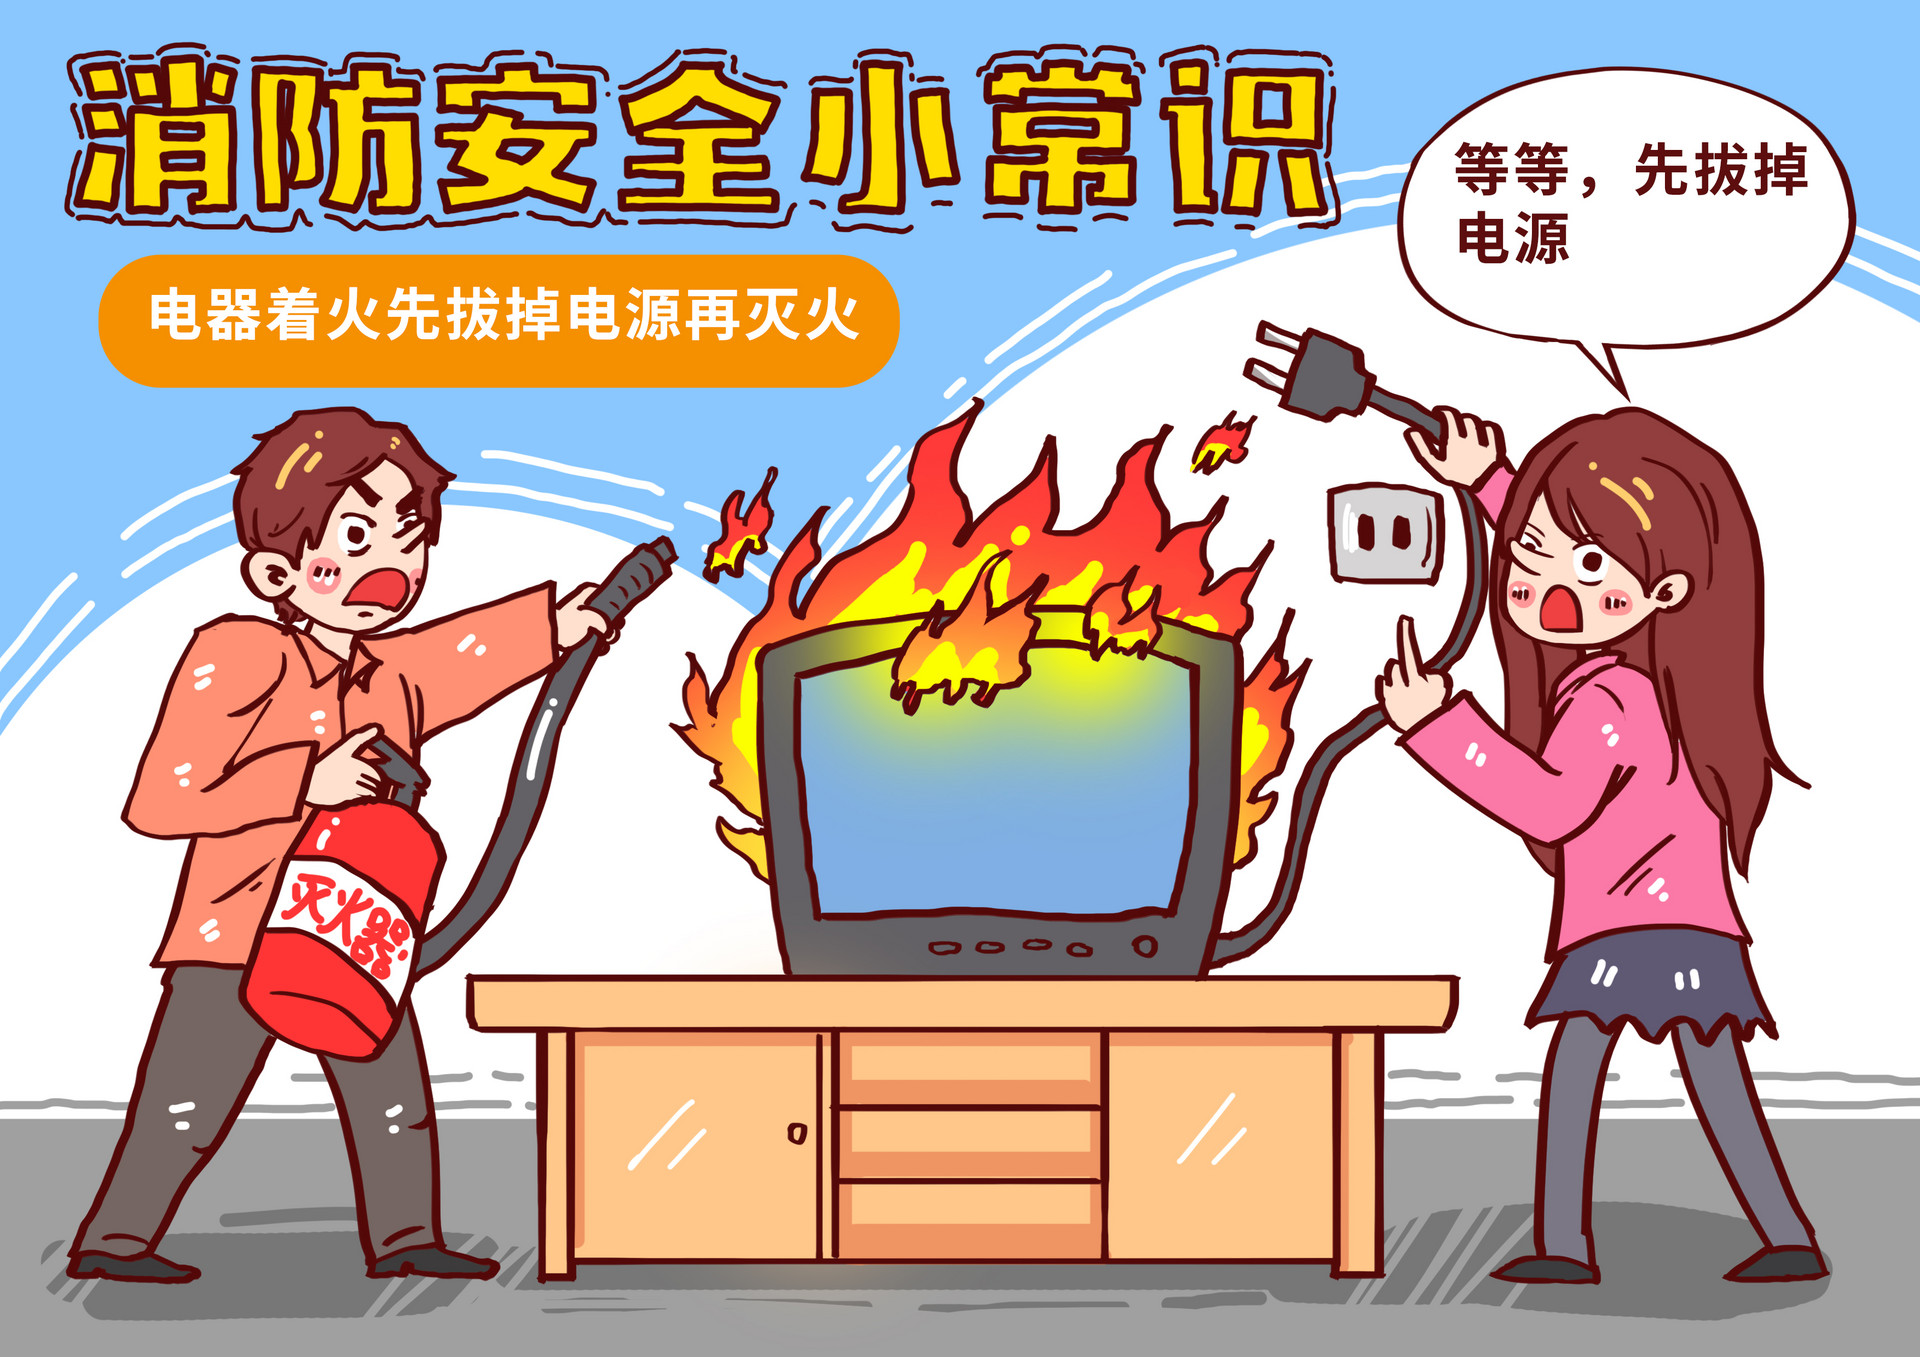 摄图网_400817755_电器着火切断电源再灭火漫画(企业商用).jpg